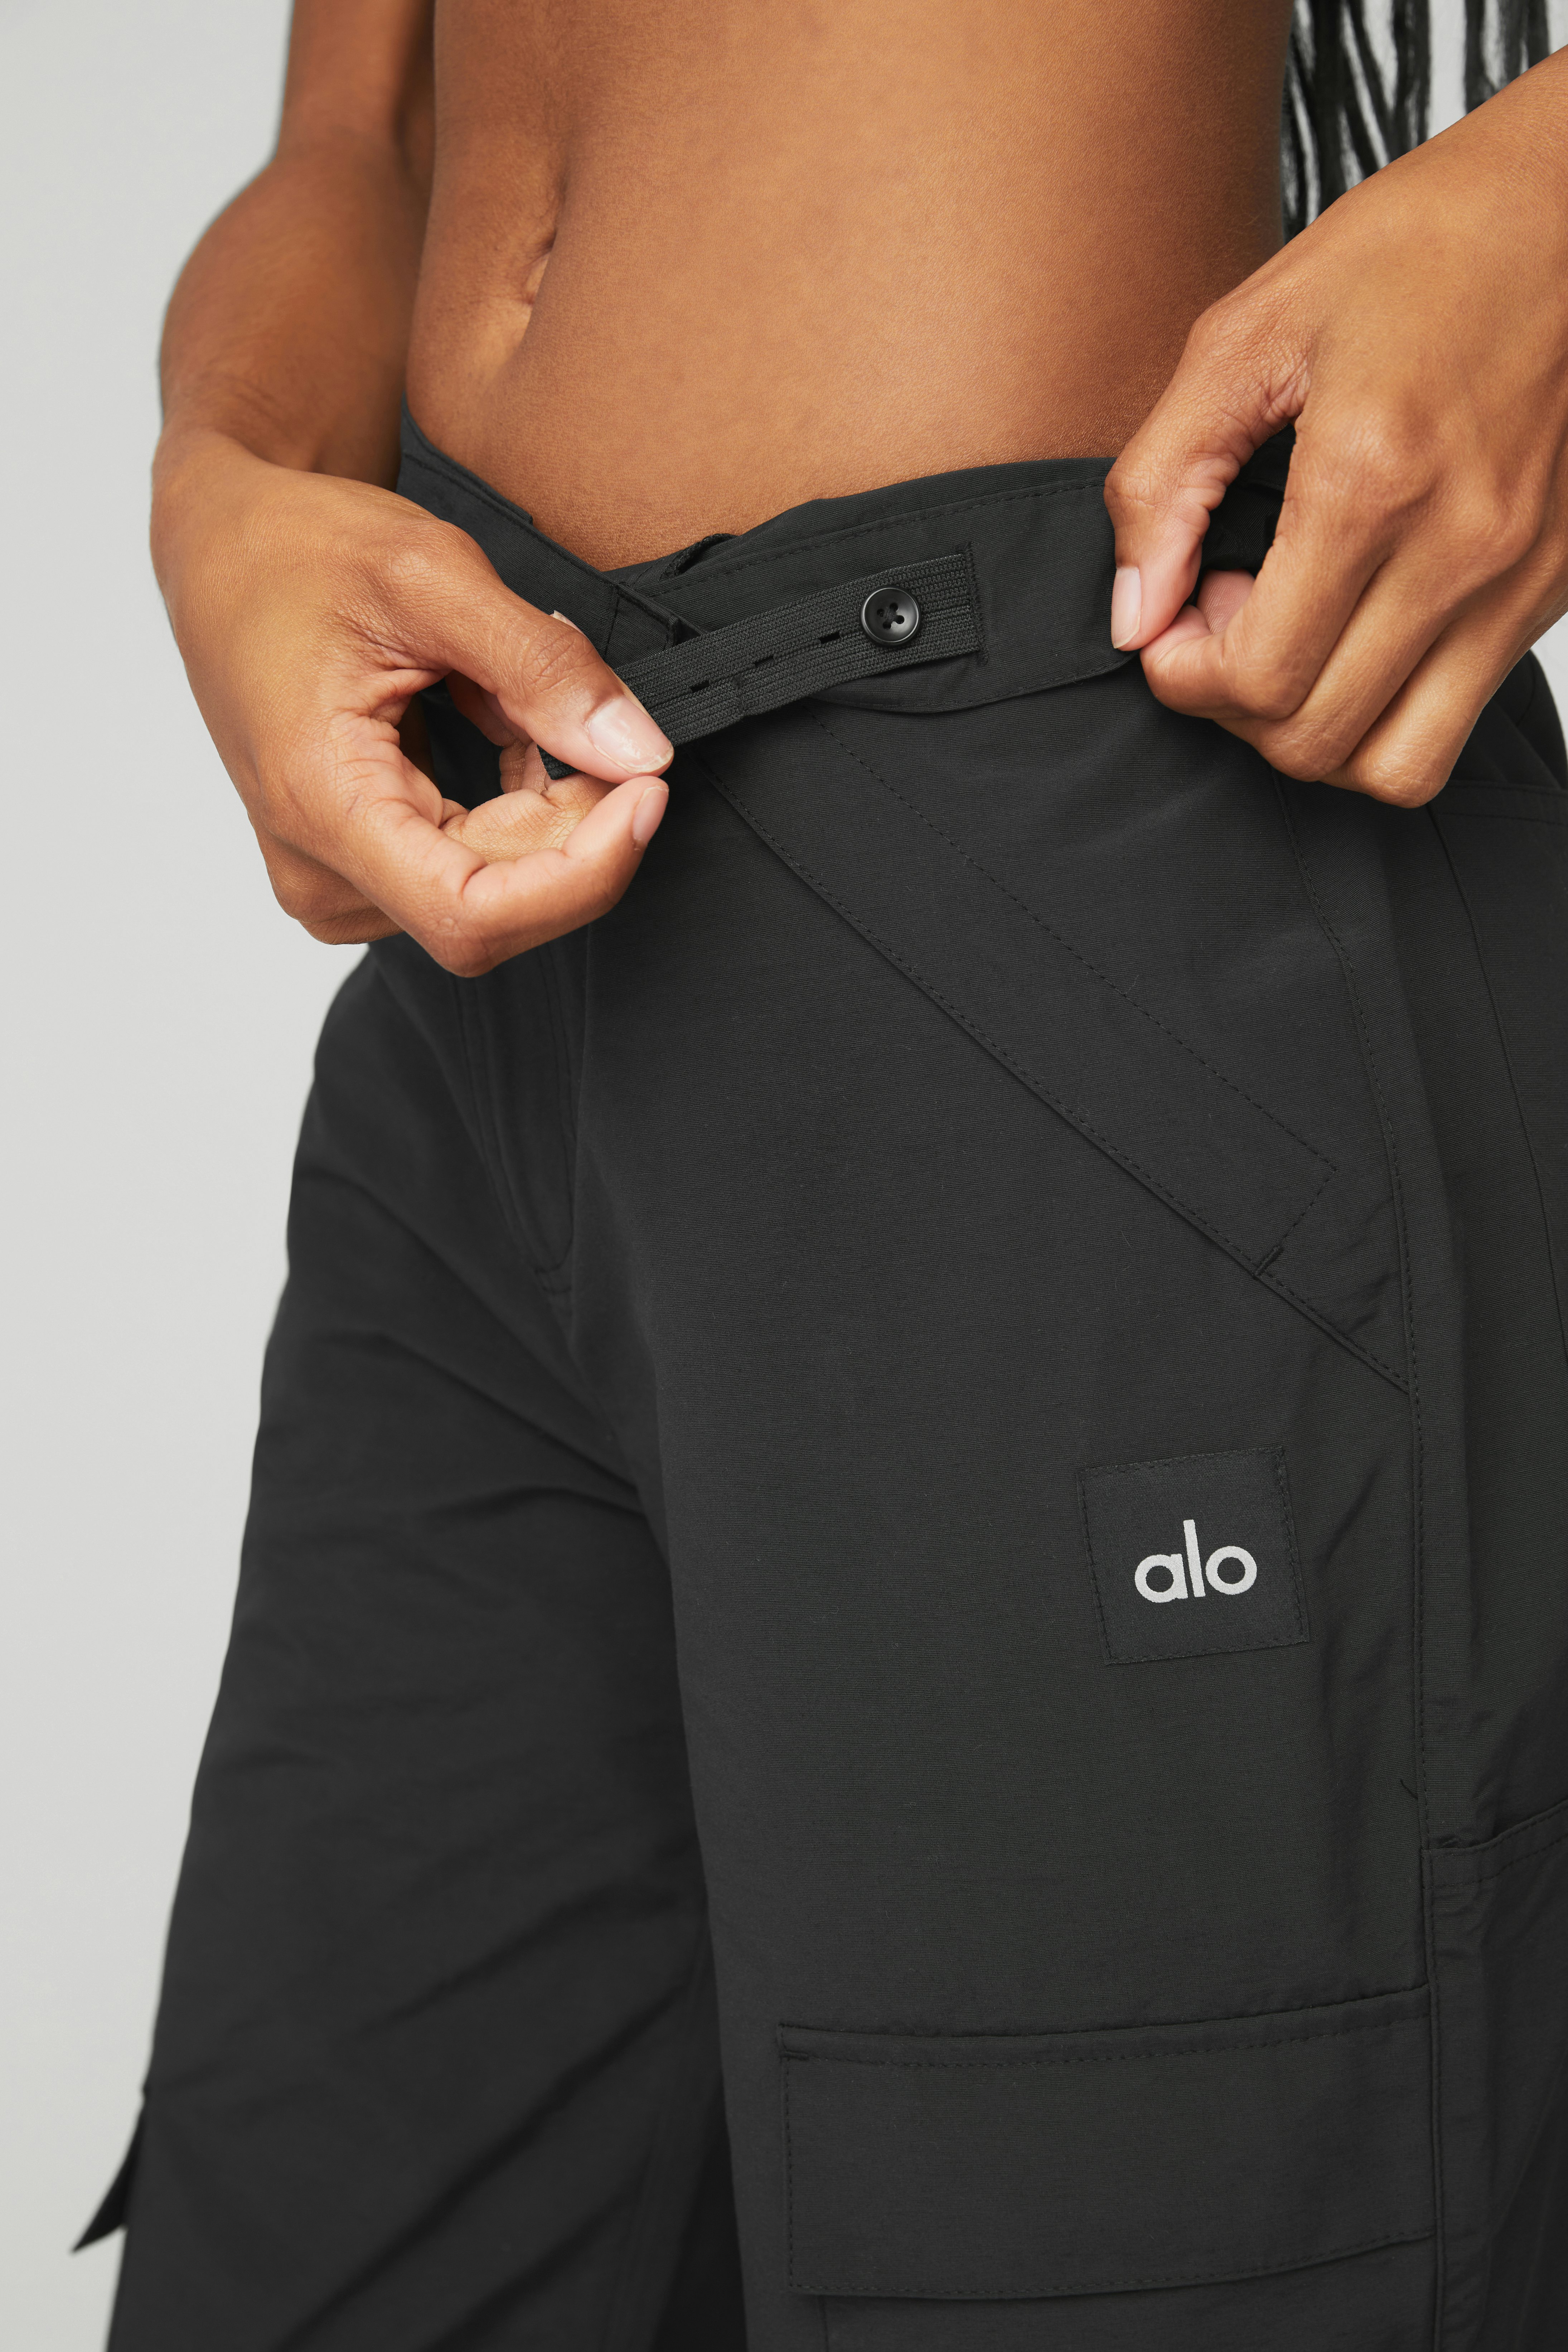 Alo Zip Cargo Pants for Women